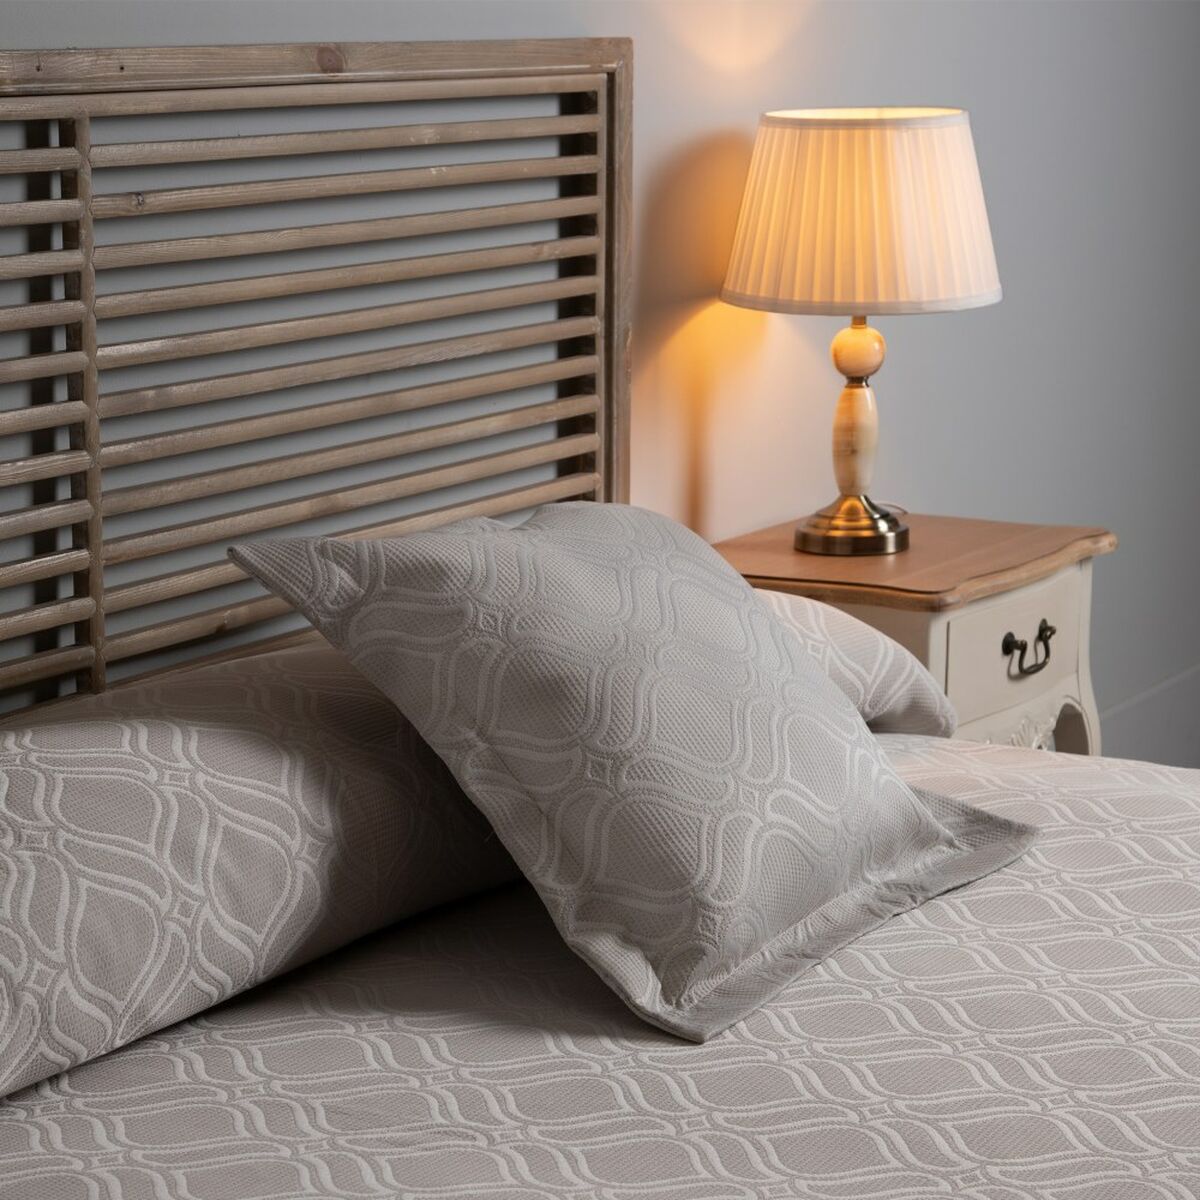 Bedspread (quilt) 190 x 270 cm Beige